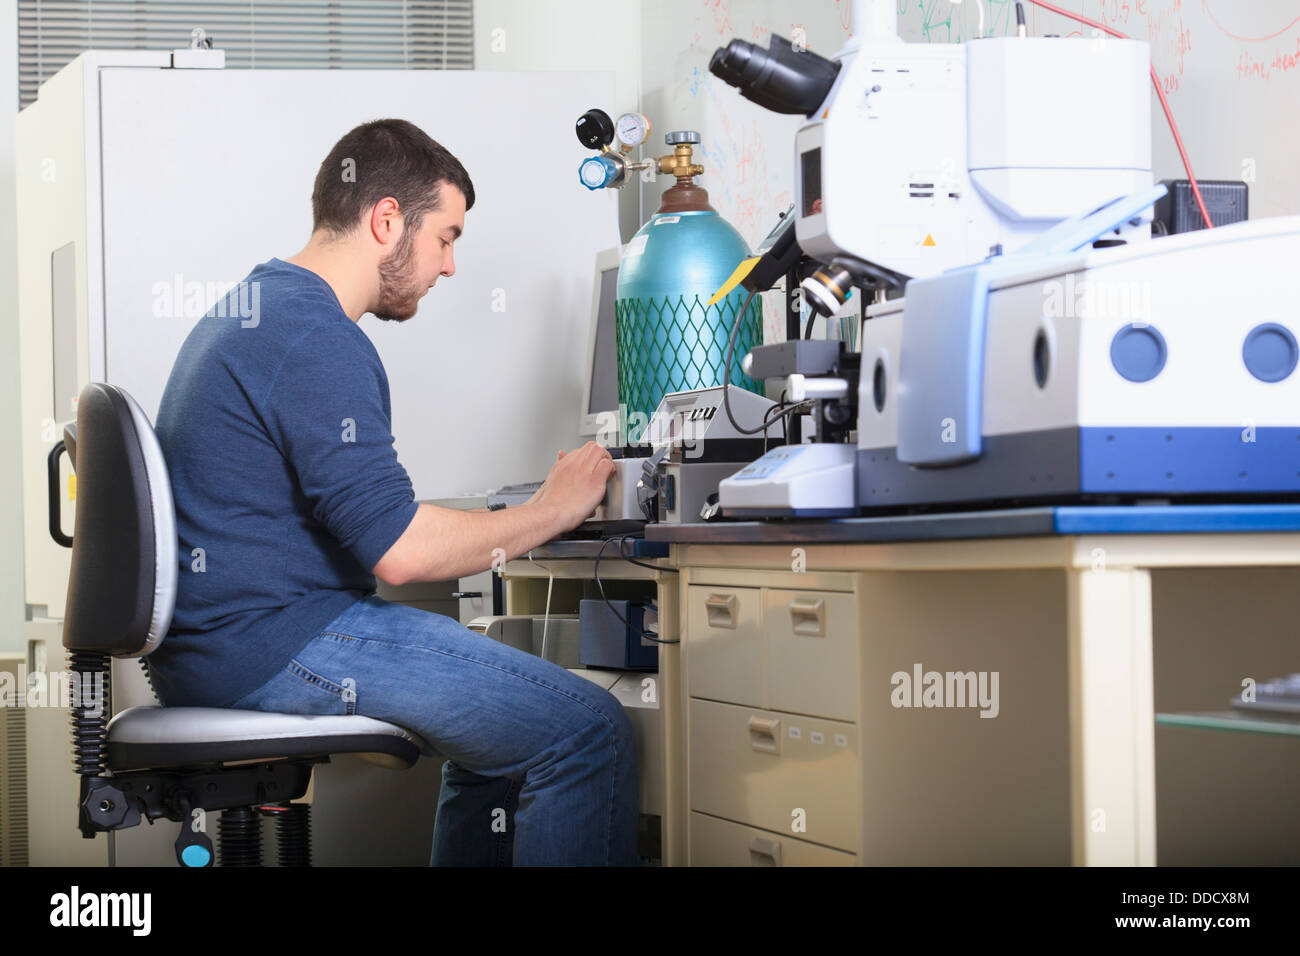 Studente di ingegneria lettura schermata di analisi chimica attrezzature in un laboratorio Foto Stock